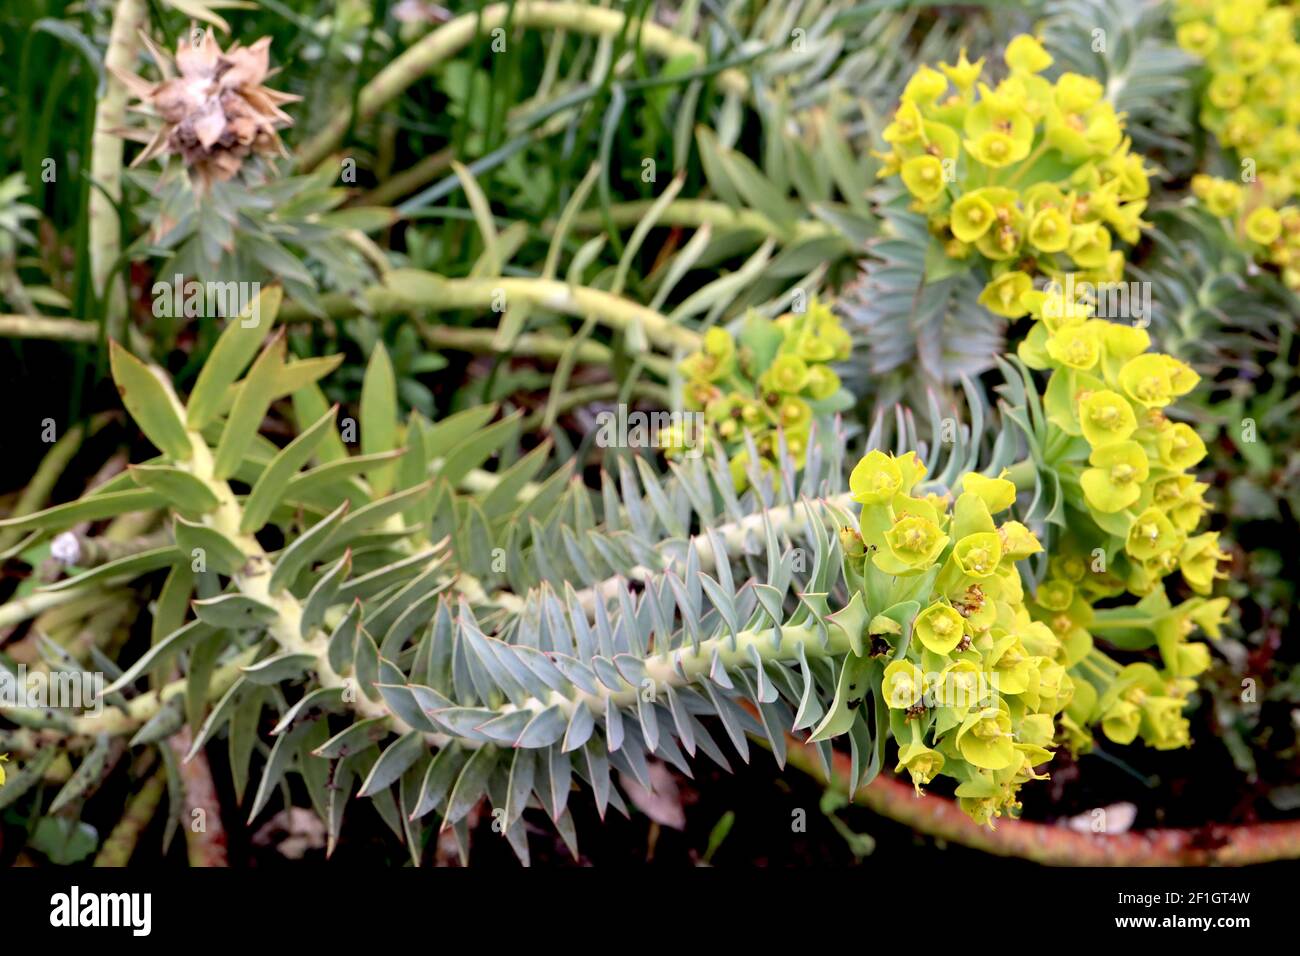 Euphorbia myrsinites sphurge de myrte – feuilles bleu vert disposées en spirale et grappes de fleurs vert lime, mars, Angleterre, Royaume-Uni Banque D'Images